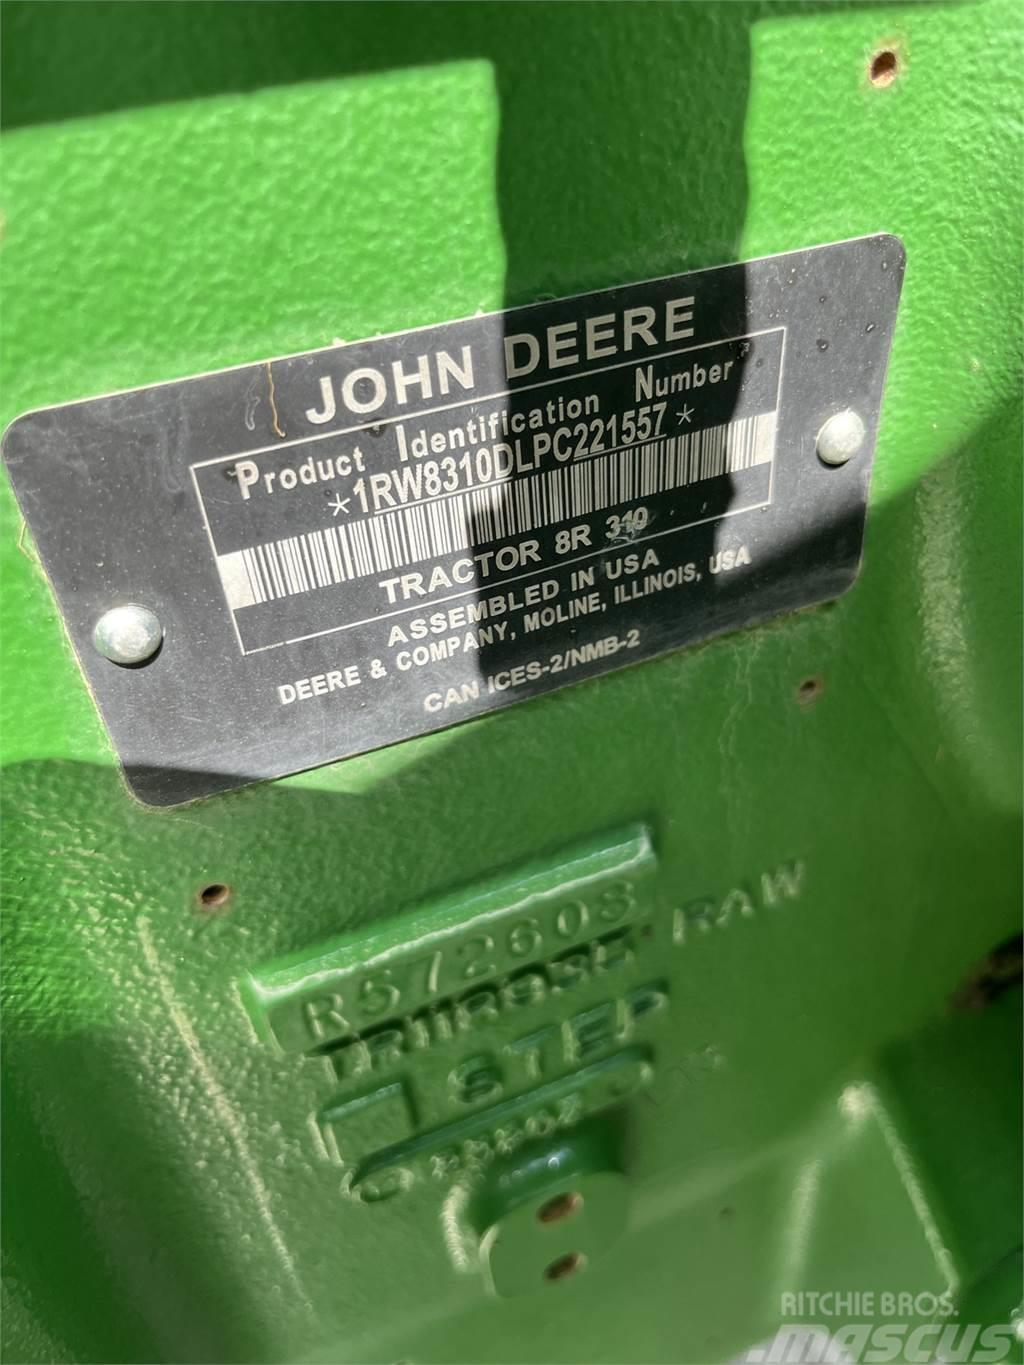 John Deere 8R 310 Tractors